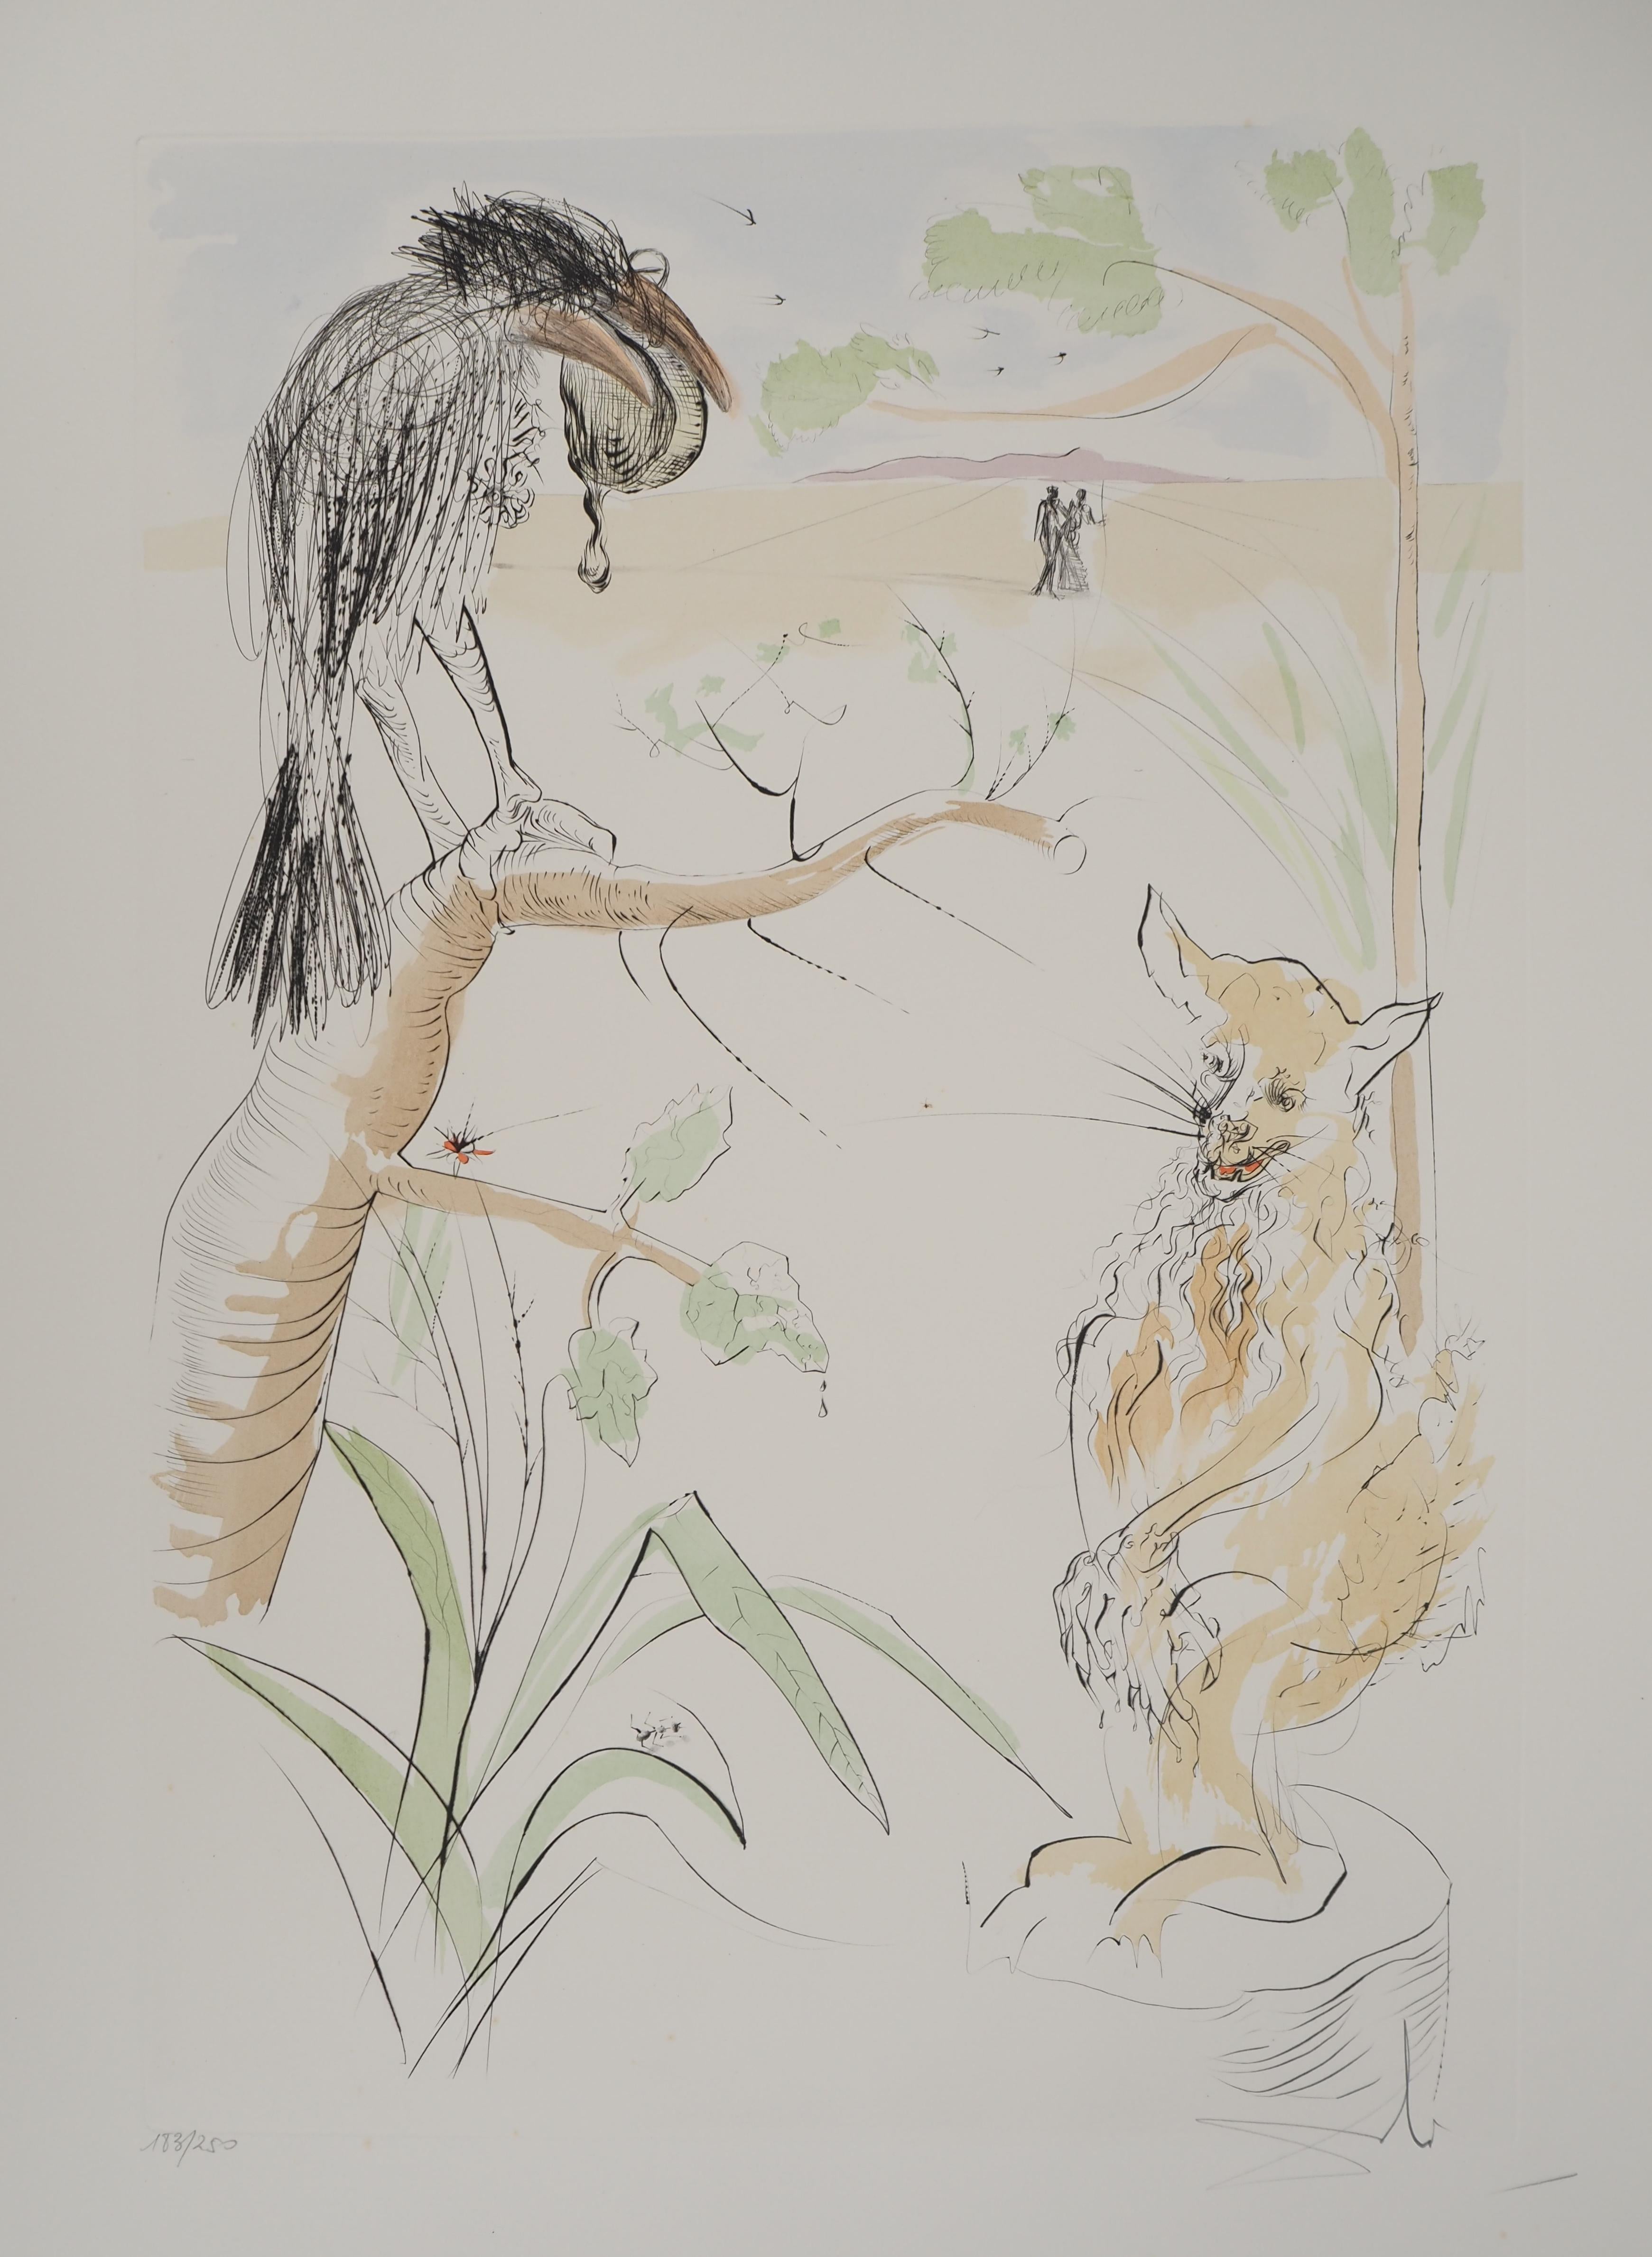 Le Bestiaire de La Fontaine, Le Crow et le Renard - Gravure originale, SIGNÉE DE LA MAIN, 1974 - Surréalisme Print par Salvador Dalí